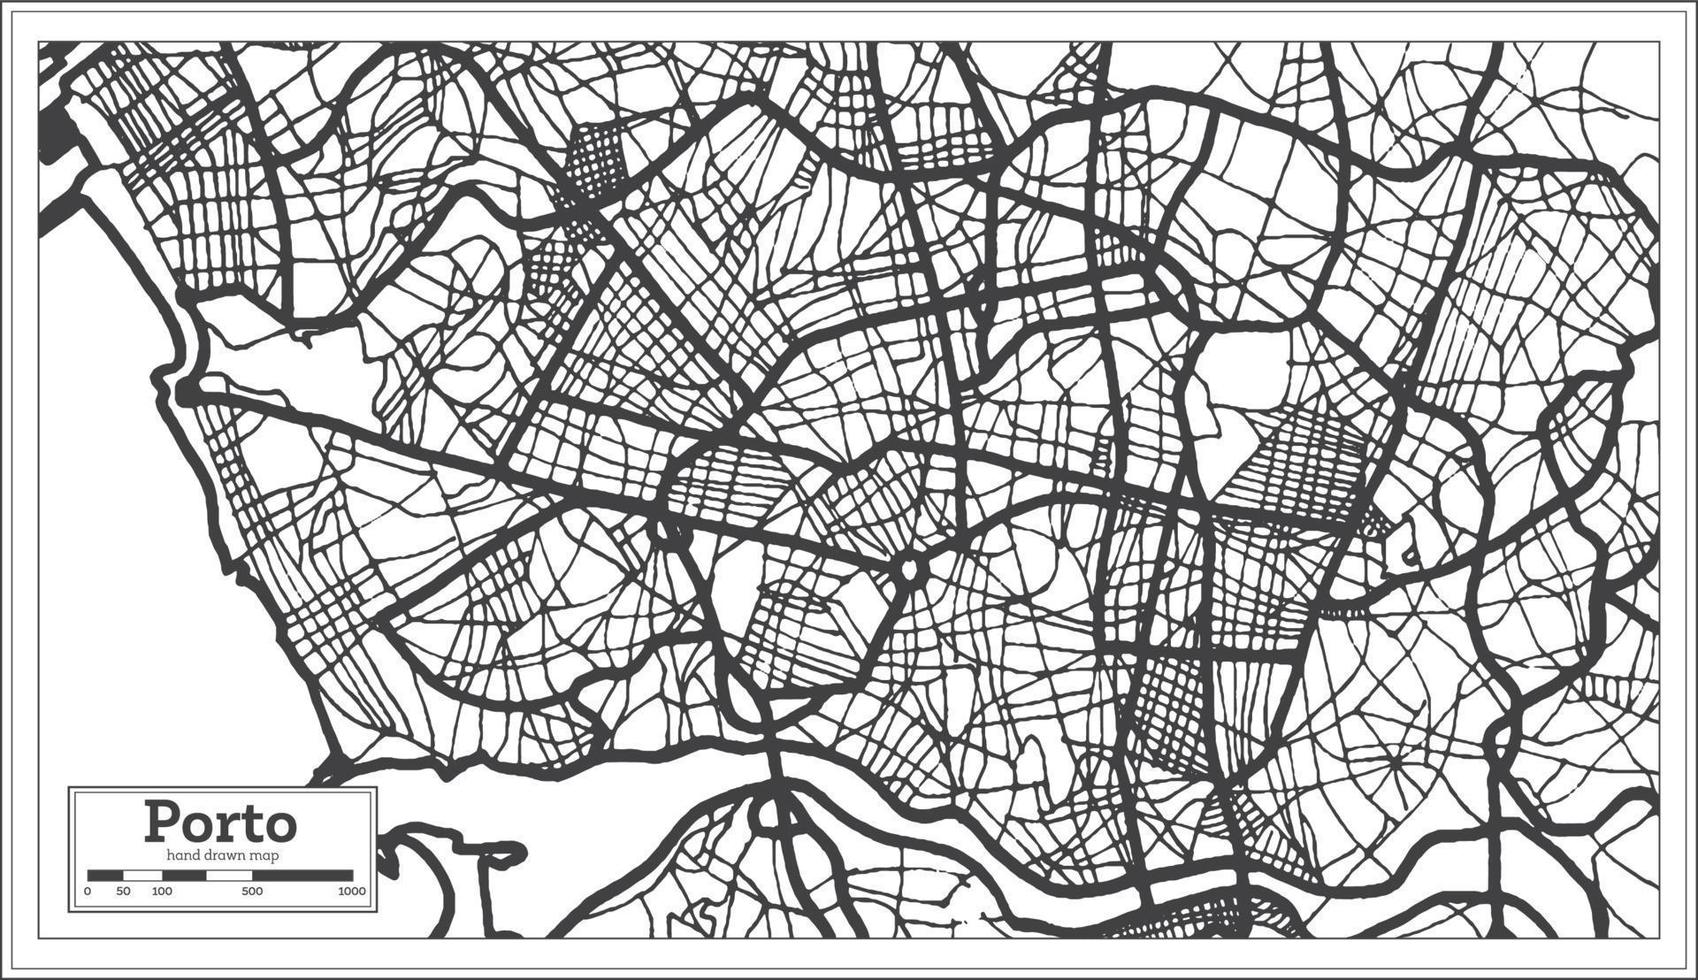 plan de la ville de porto portugal dans un style rétro. carte muette. vecteur